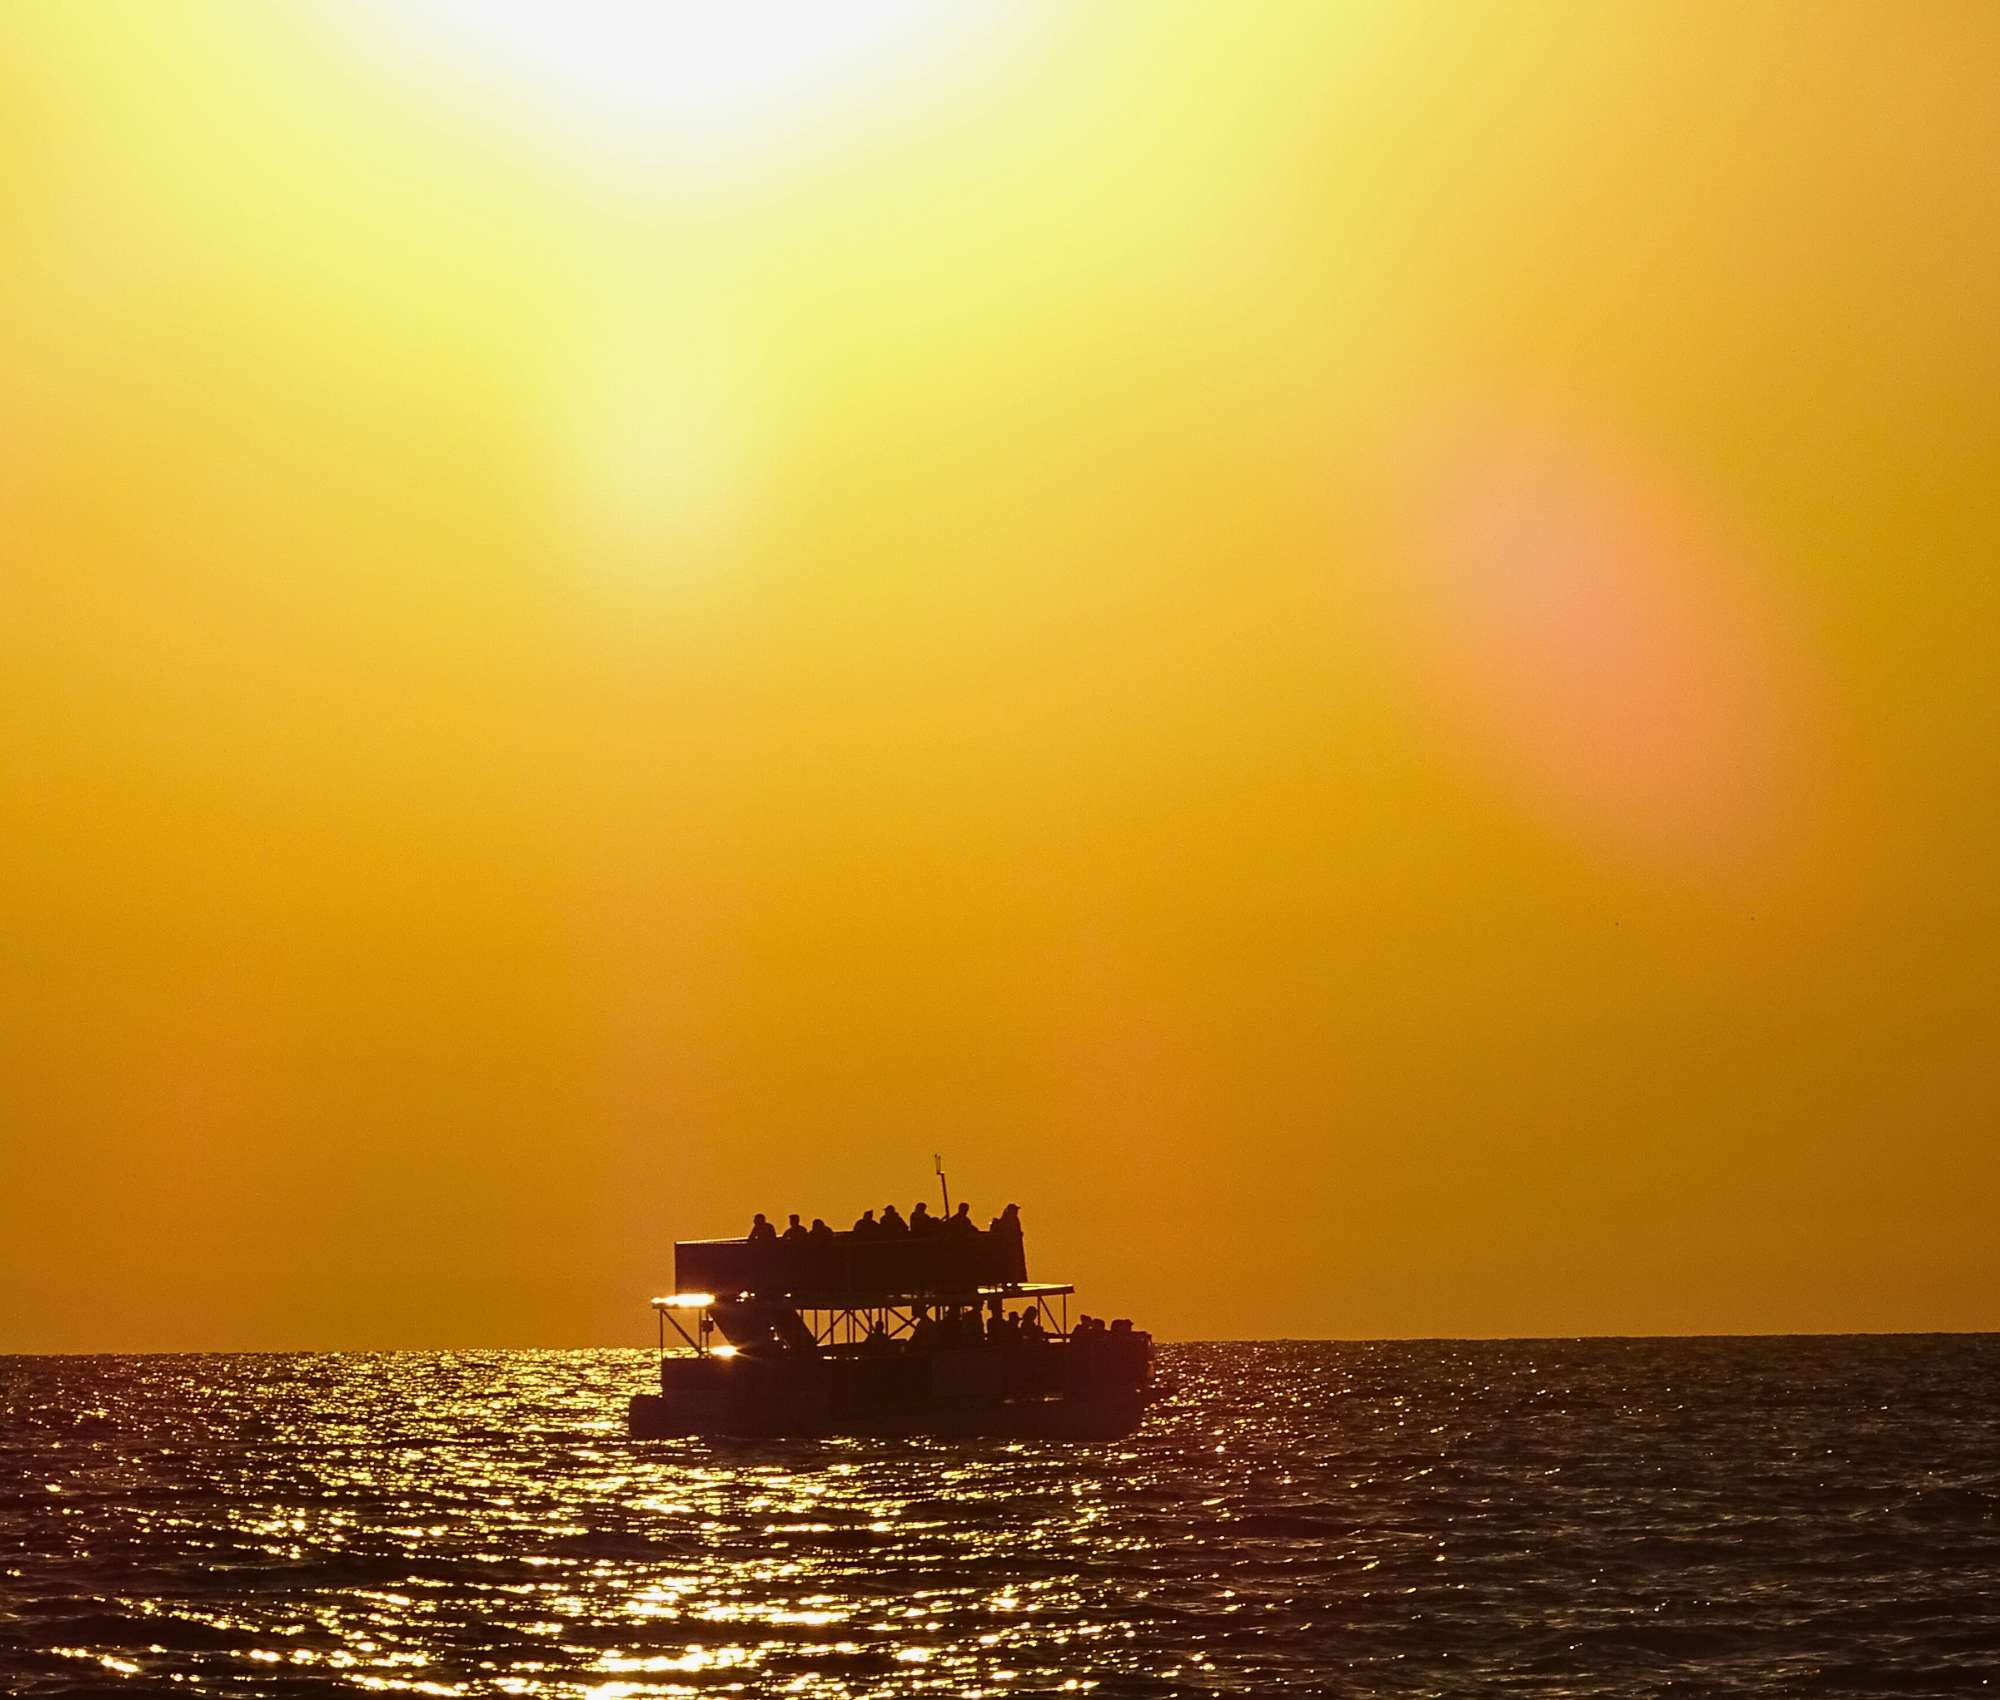 sunset cruise